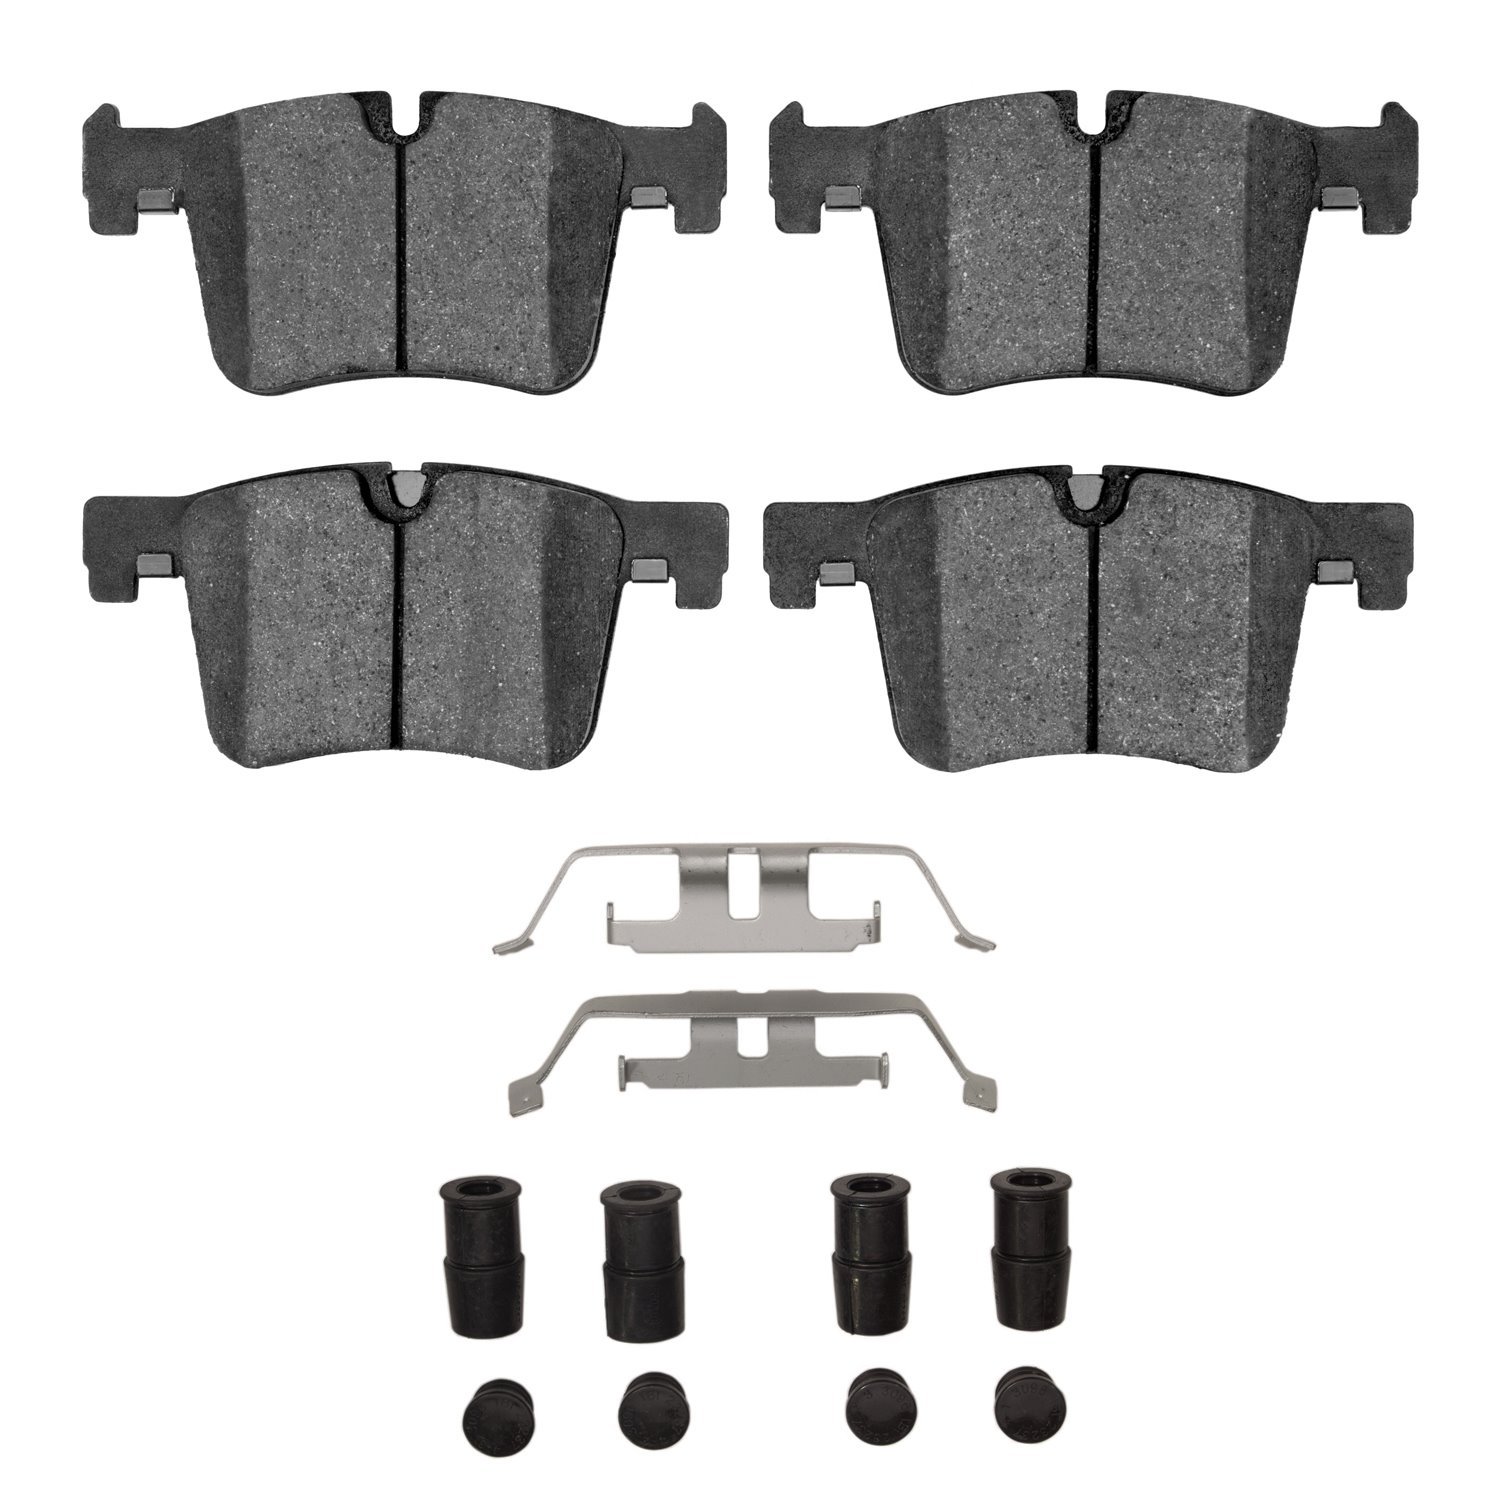 1600-1561-01 5000 Euro Ceramic Brake Pads & Hardware Kit, 2011-2021 BMW, Position: Front